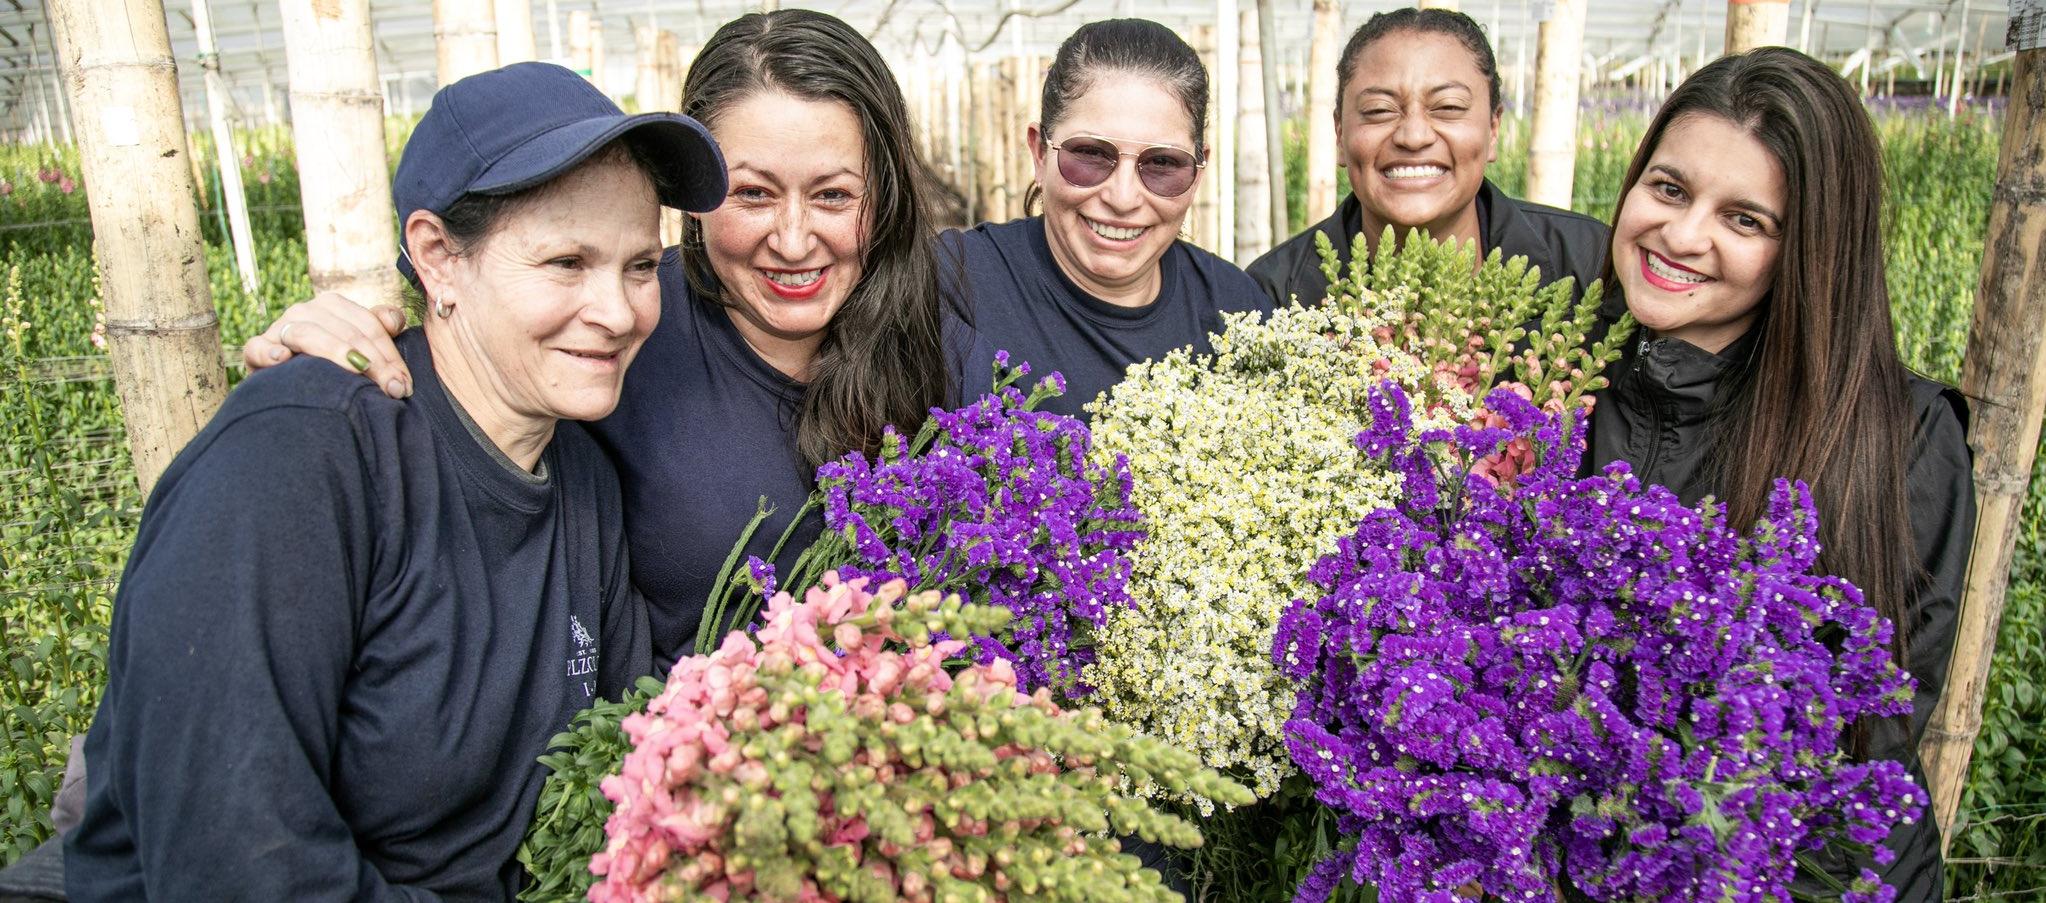 El 60 % de los empleos directos de los cultivos de flores es ocupados por mujeres.